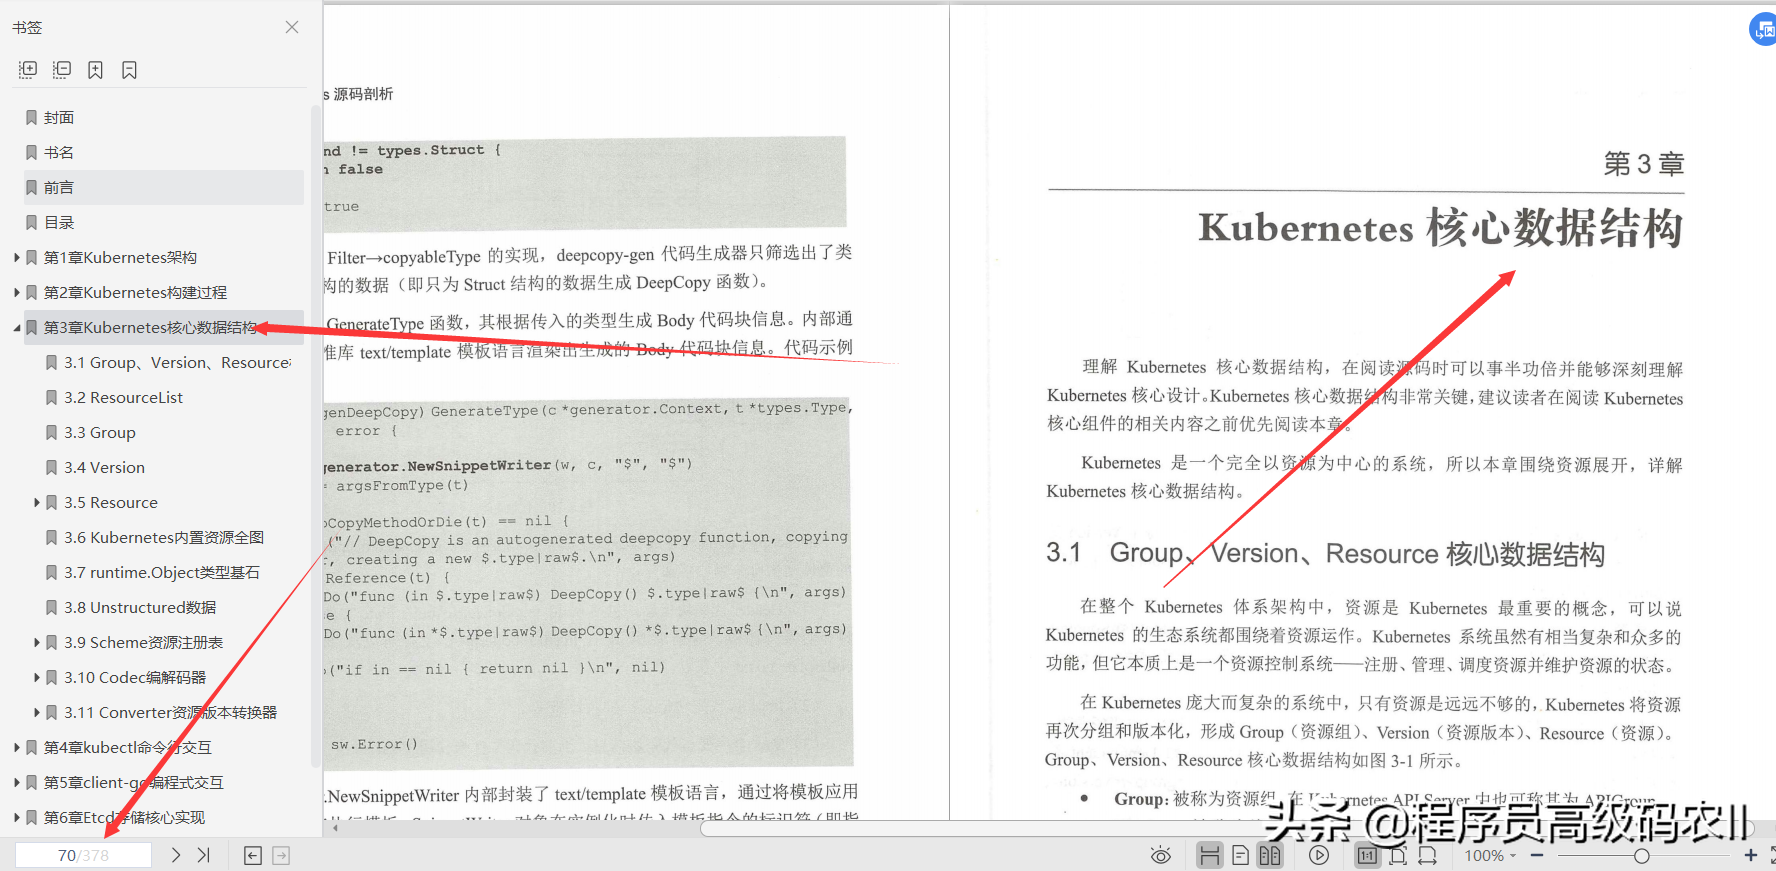 终于读完谷歌高级架构师分享的Kubernetes源码剖析文档